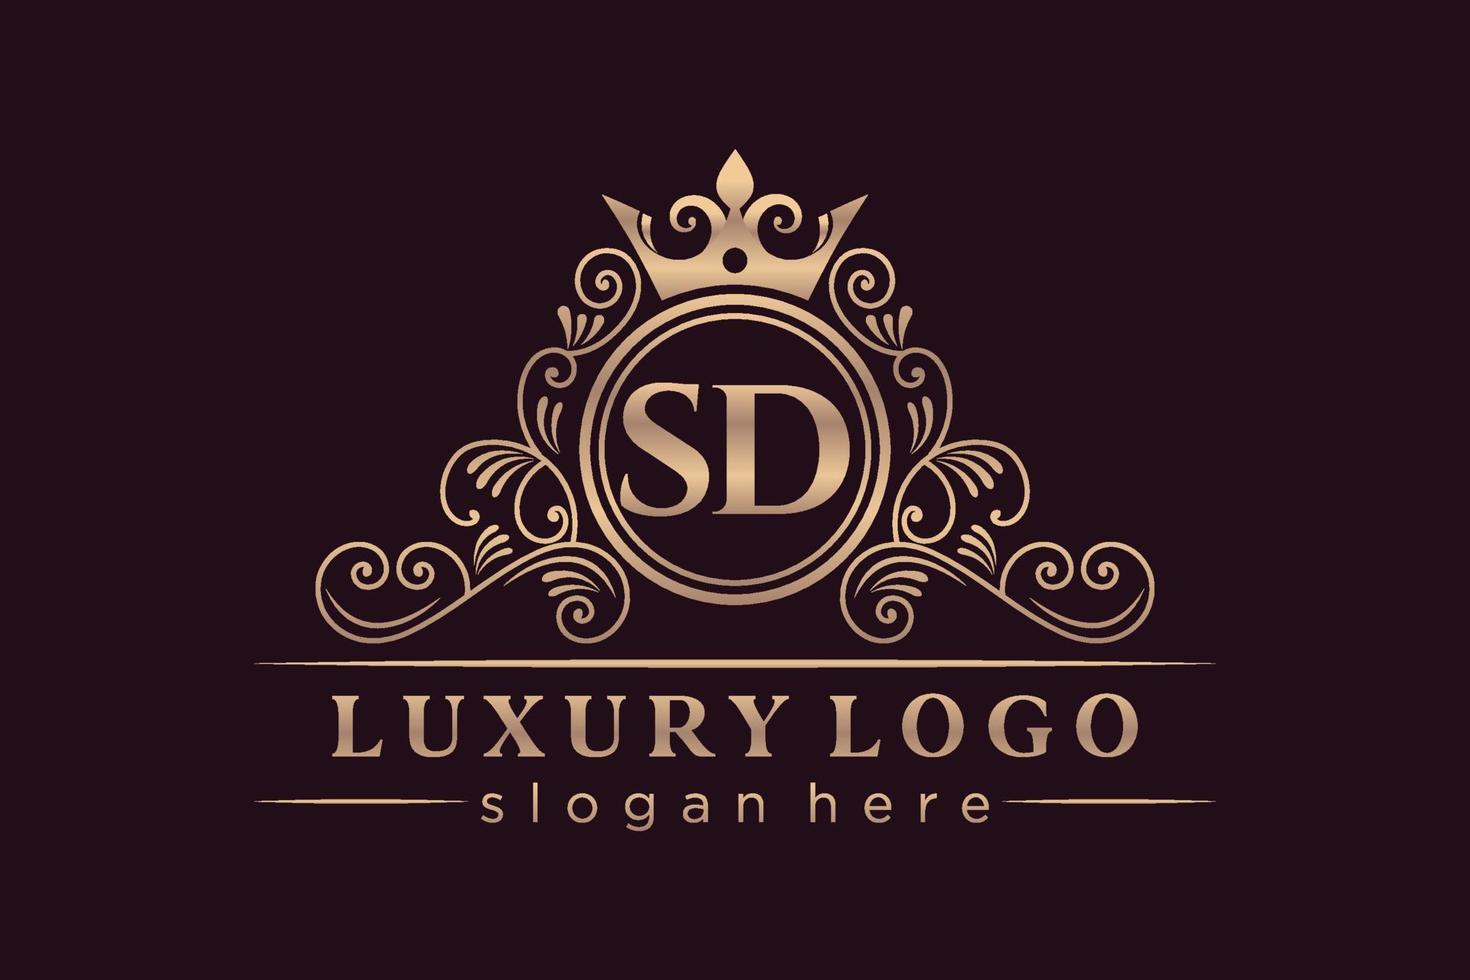 sd letra inicial oro caligráfico femenino floral dibujado a mano monograma heráldico antiguo estilo vintage diseño de logotipo de lujo vector premium